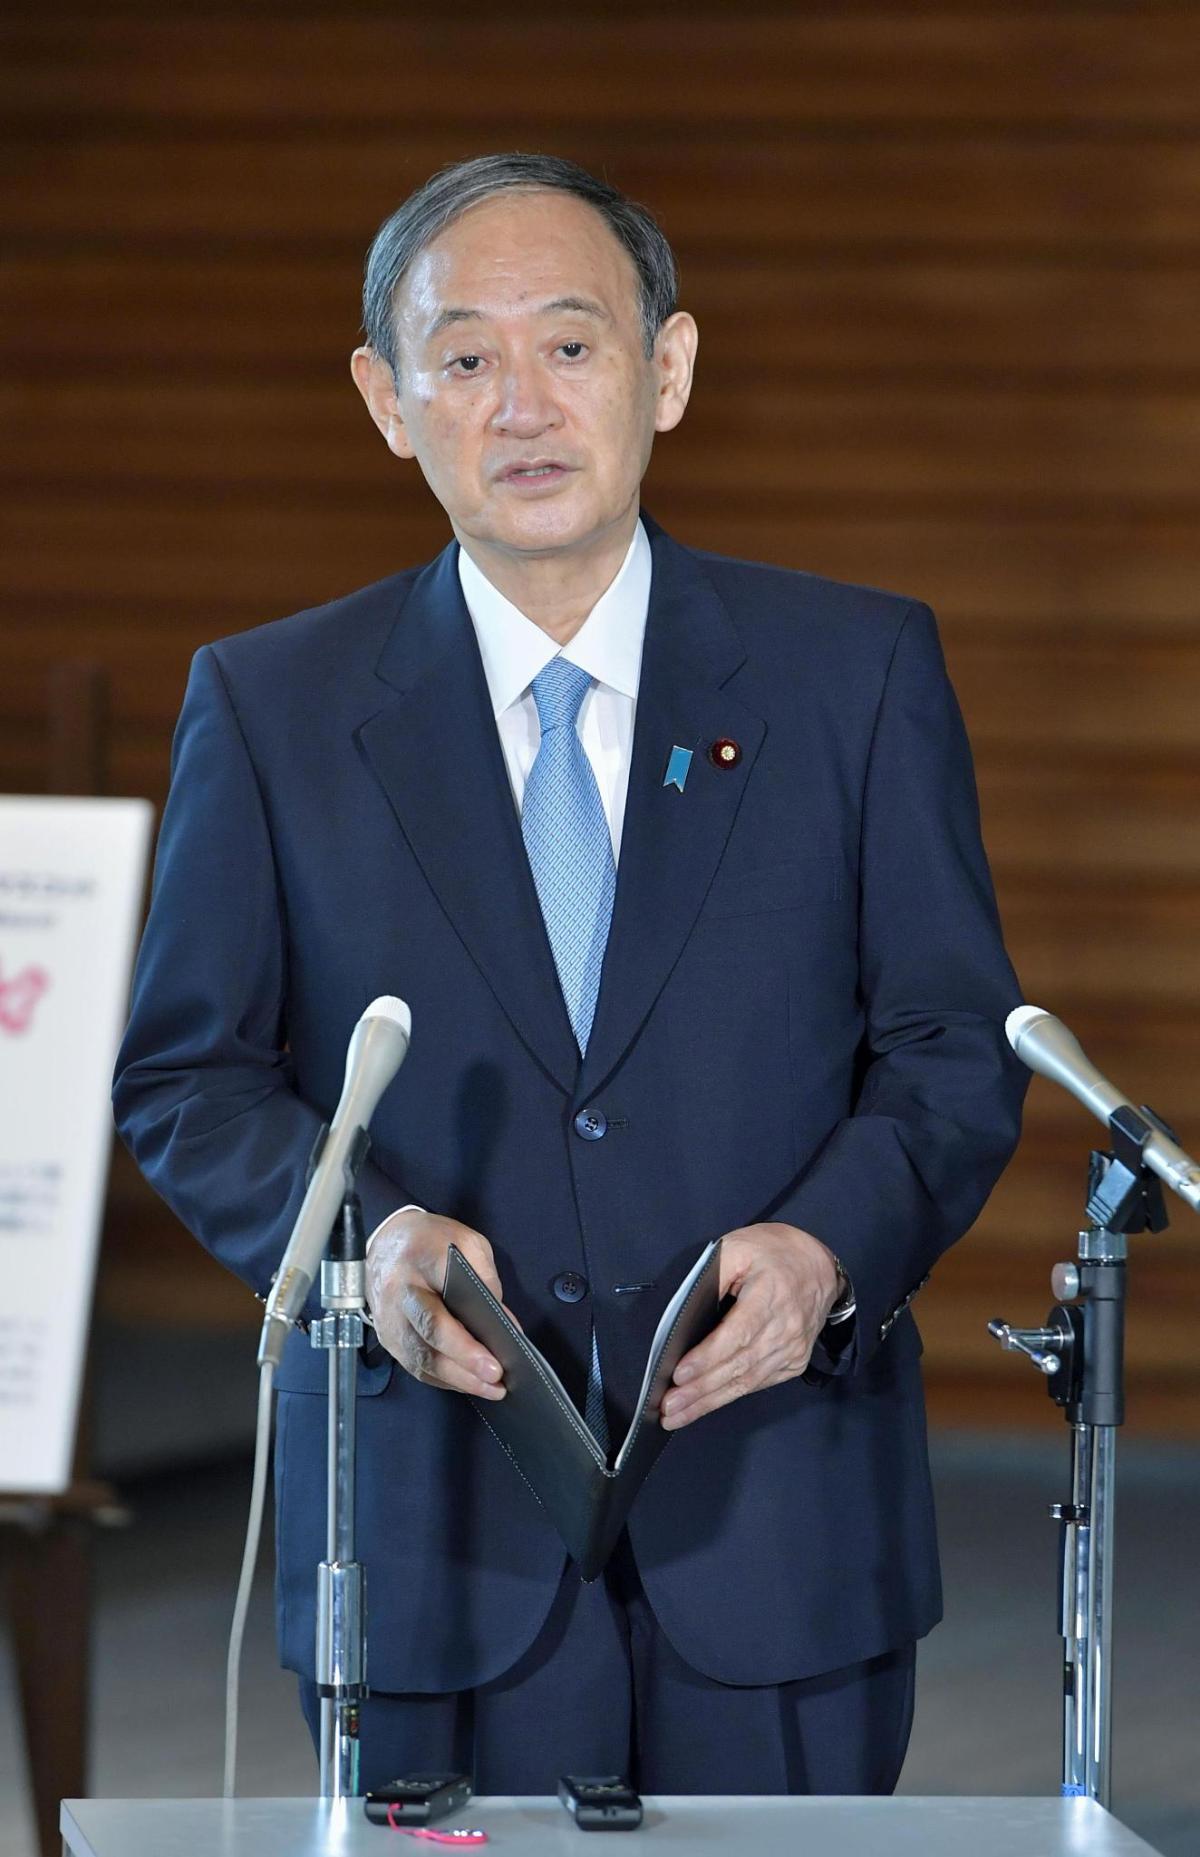 هيئة الإذاعة اليابانية: رئيس الوزراء سوغا لن يخوض انتخابات قيادة الحزب الحاكم